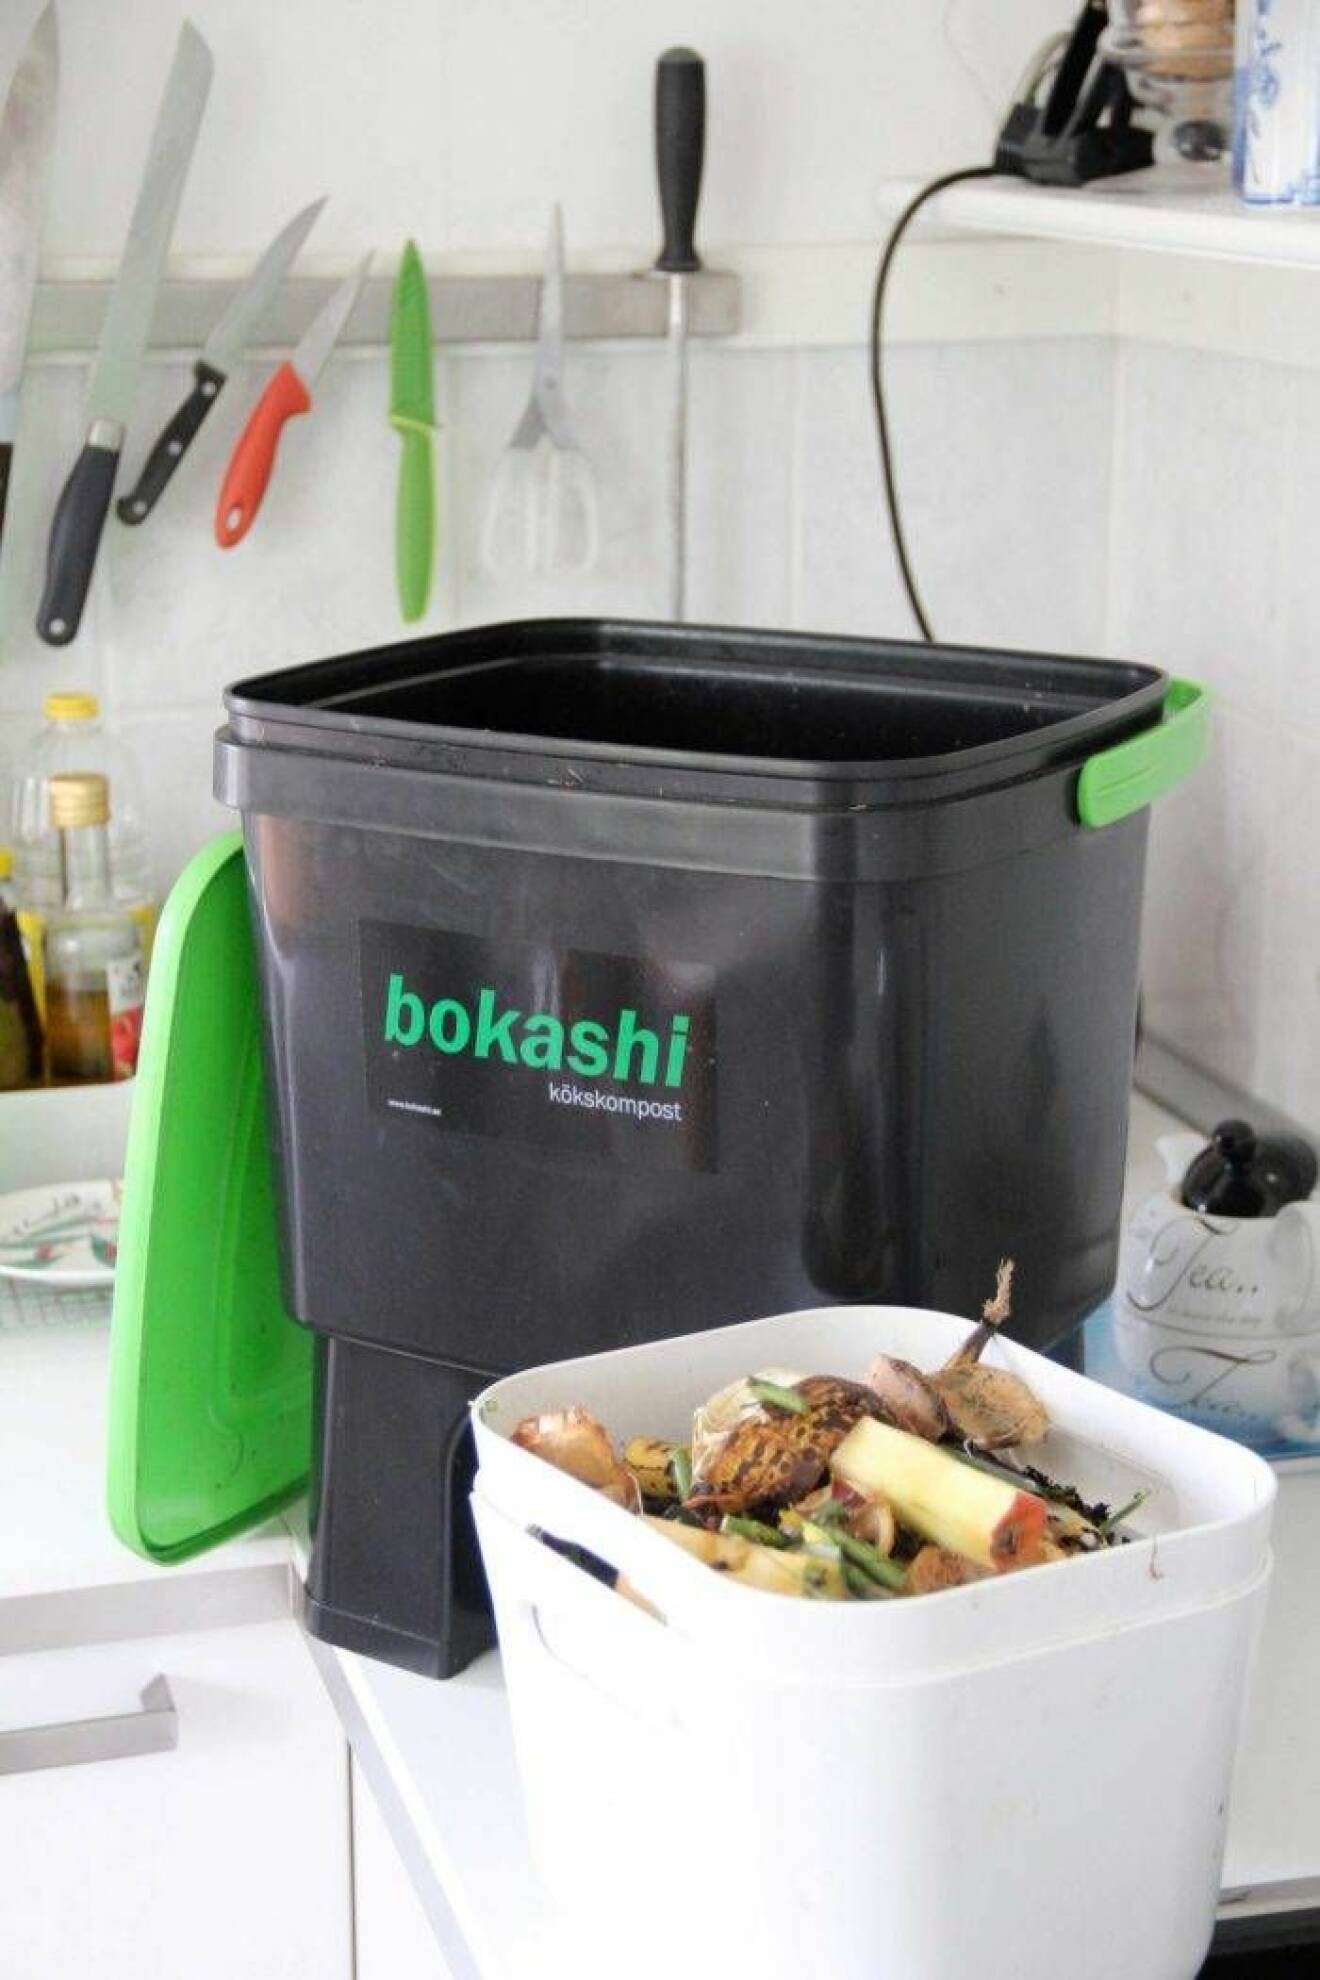 Bokashi är en komposteringsmetod som innebär fermentering med hjälp av speciella mikroorganismer. Smidig och enkelt inomhus.